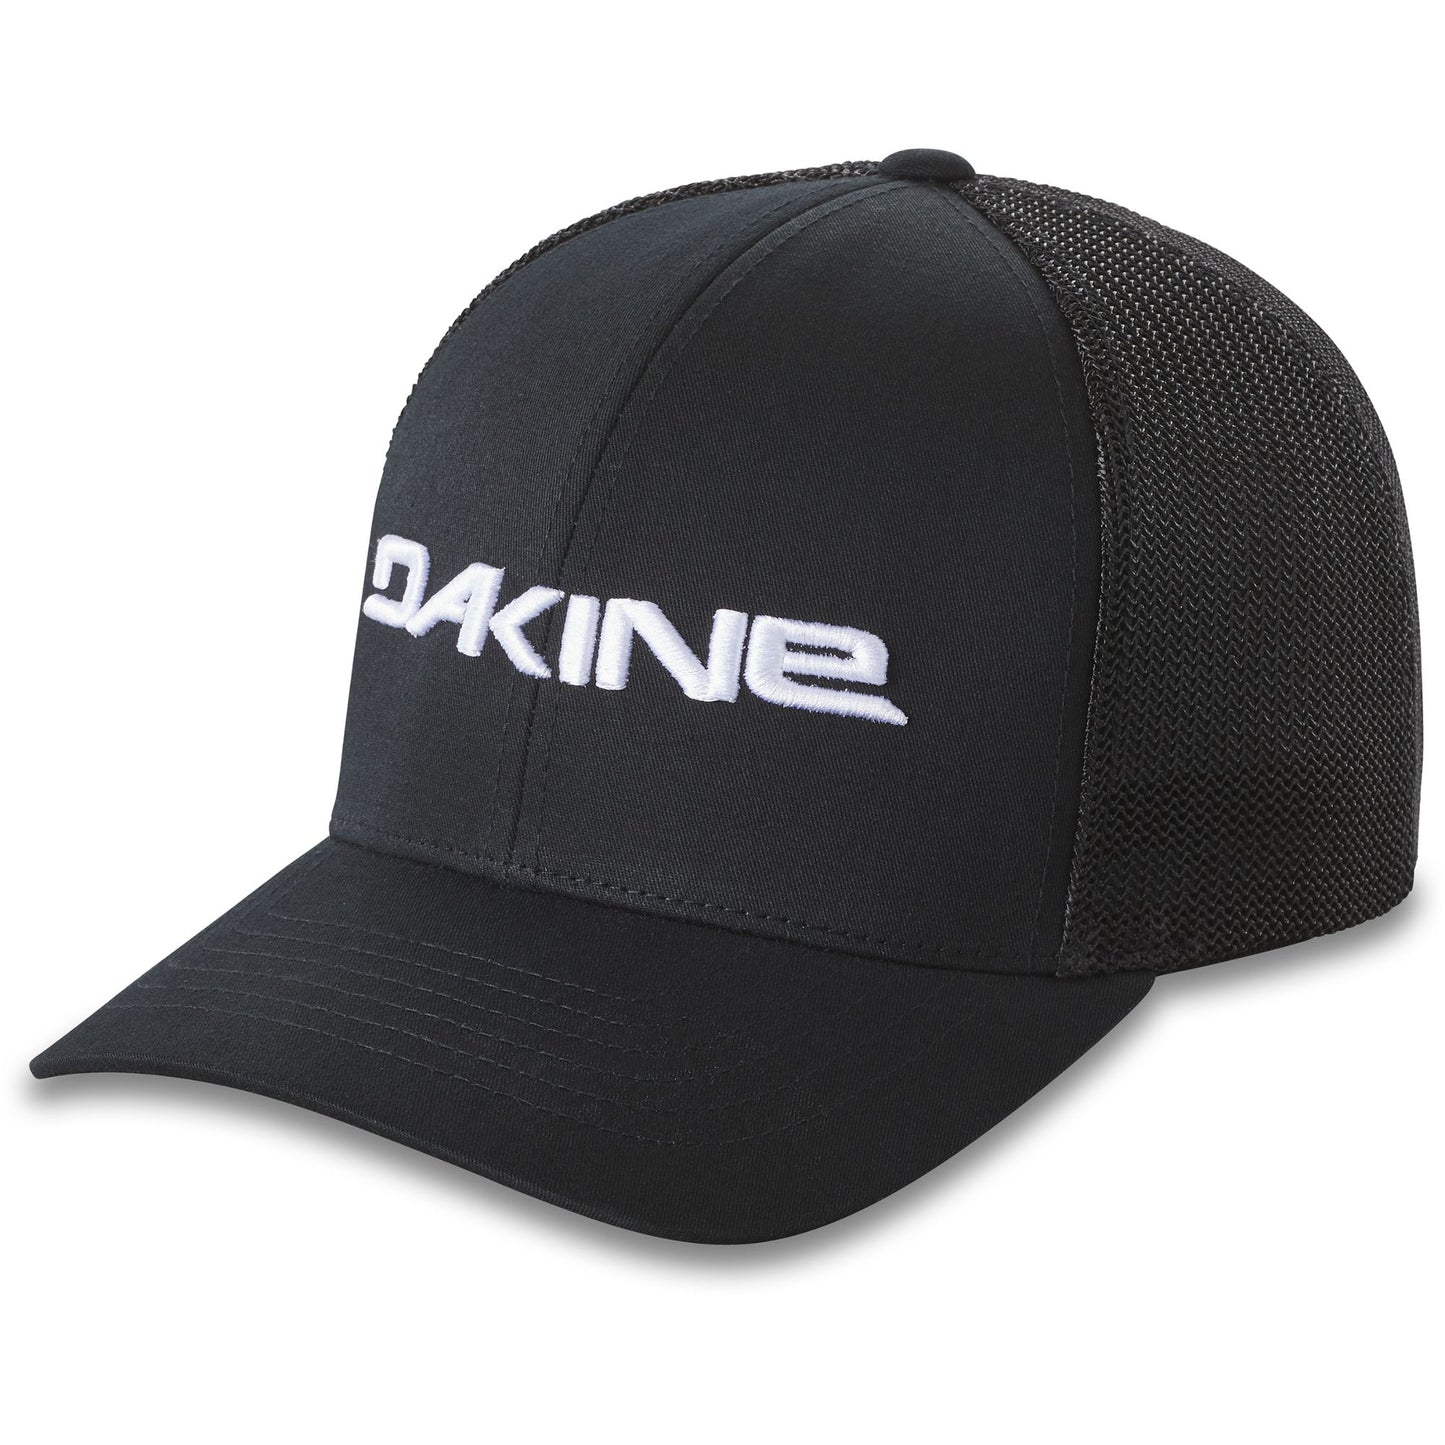 Dakine Sideline Trucker Hat Black OS Hats